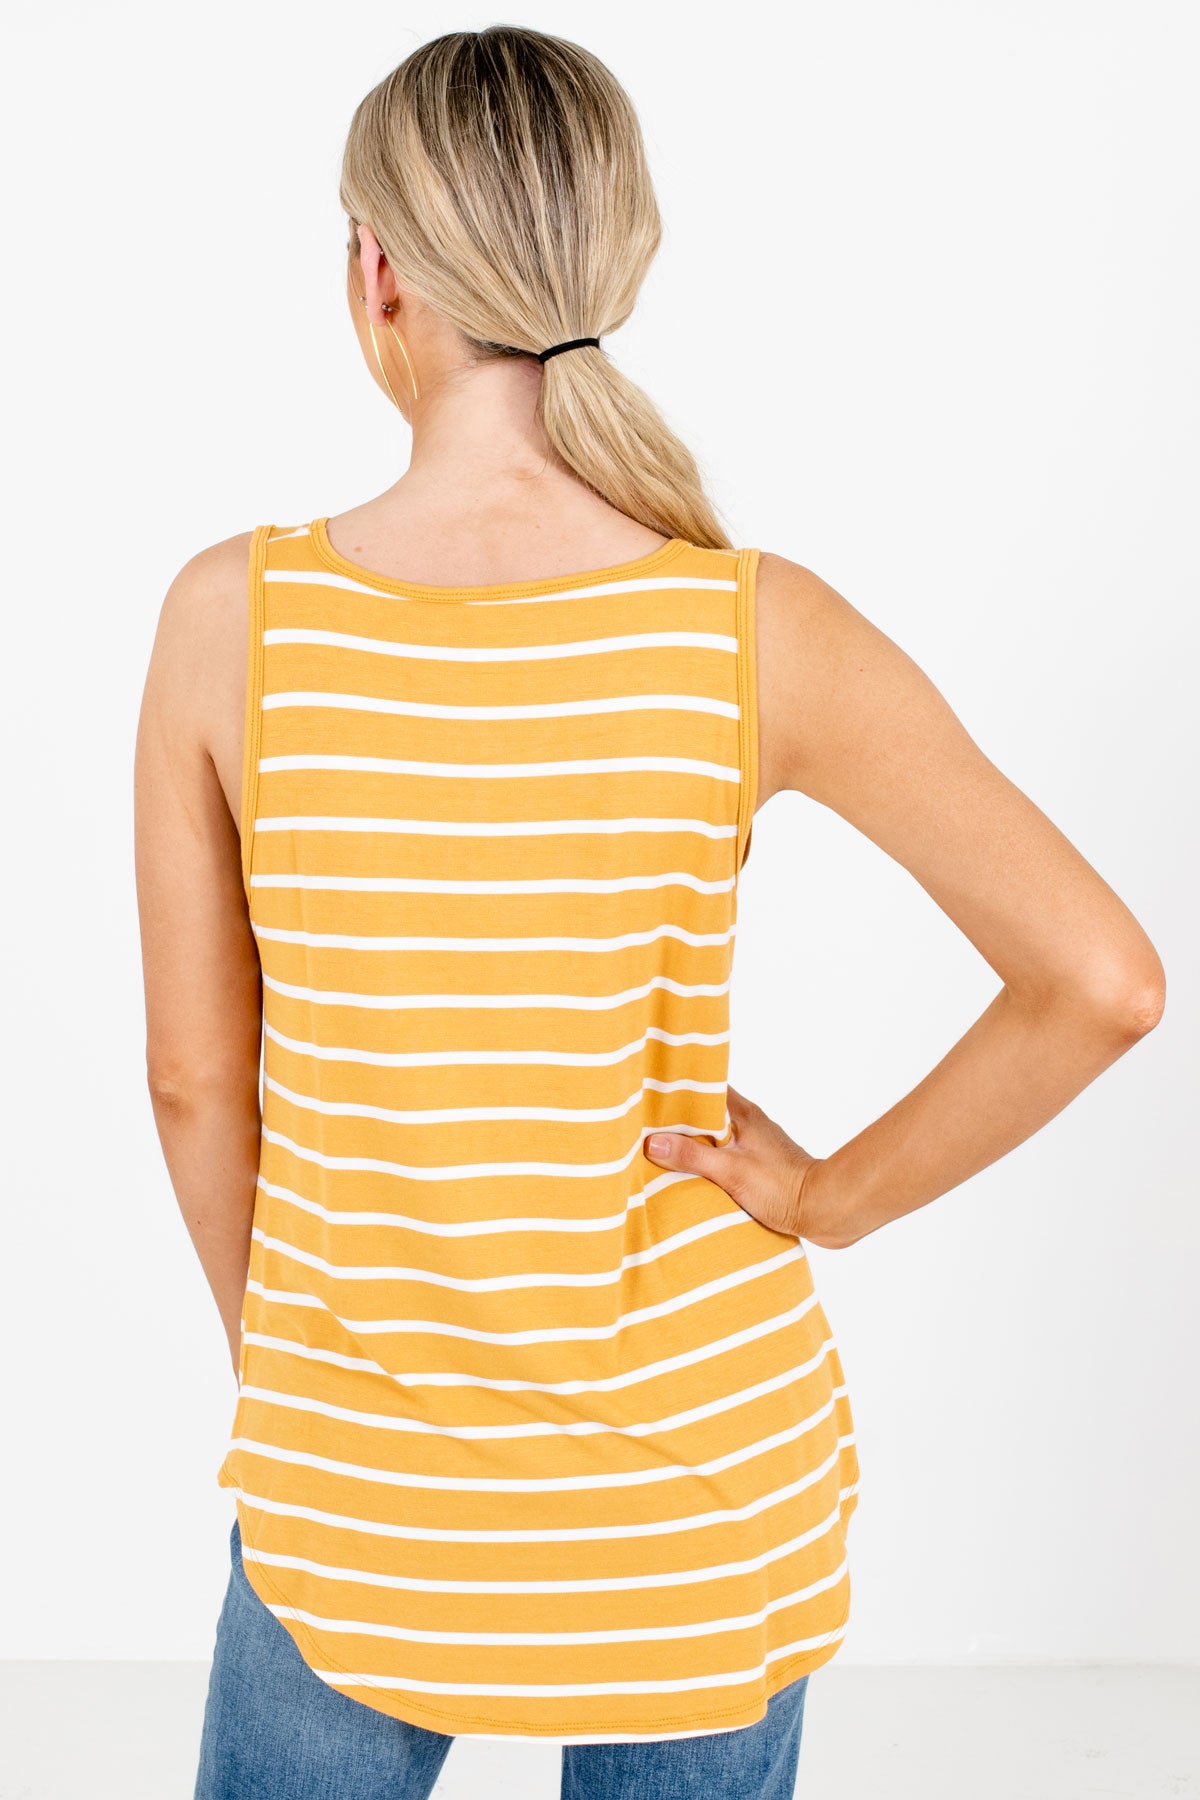 Women's Mustard Yellow Round Neckline Boutique Tank Top